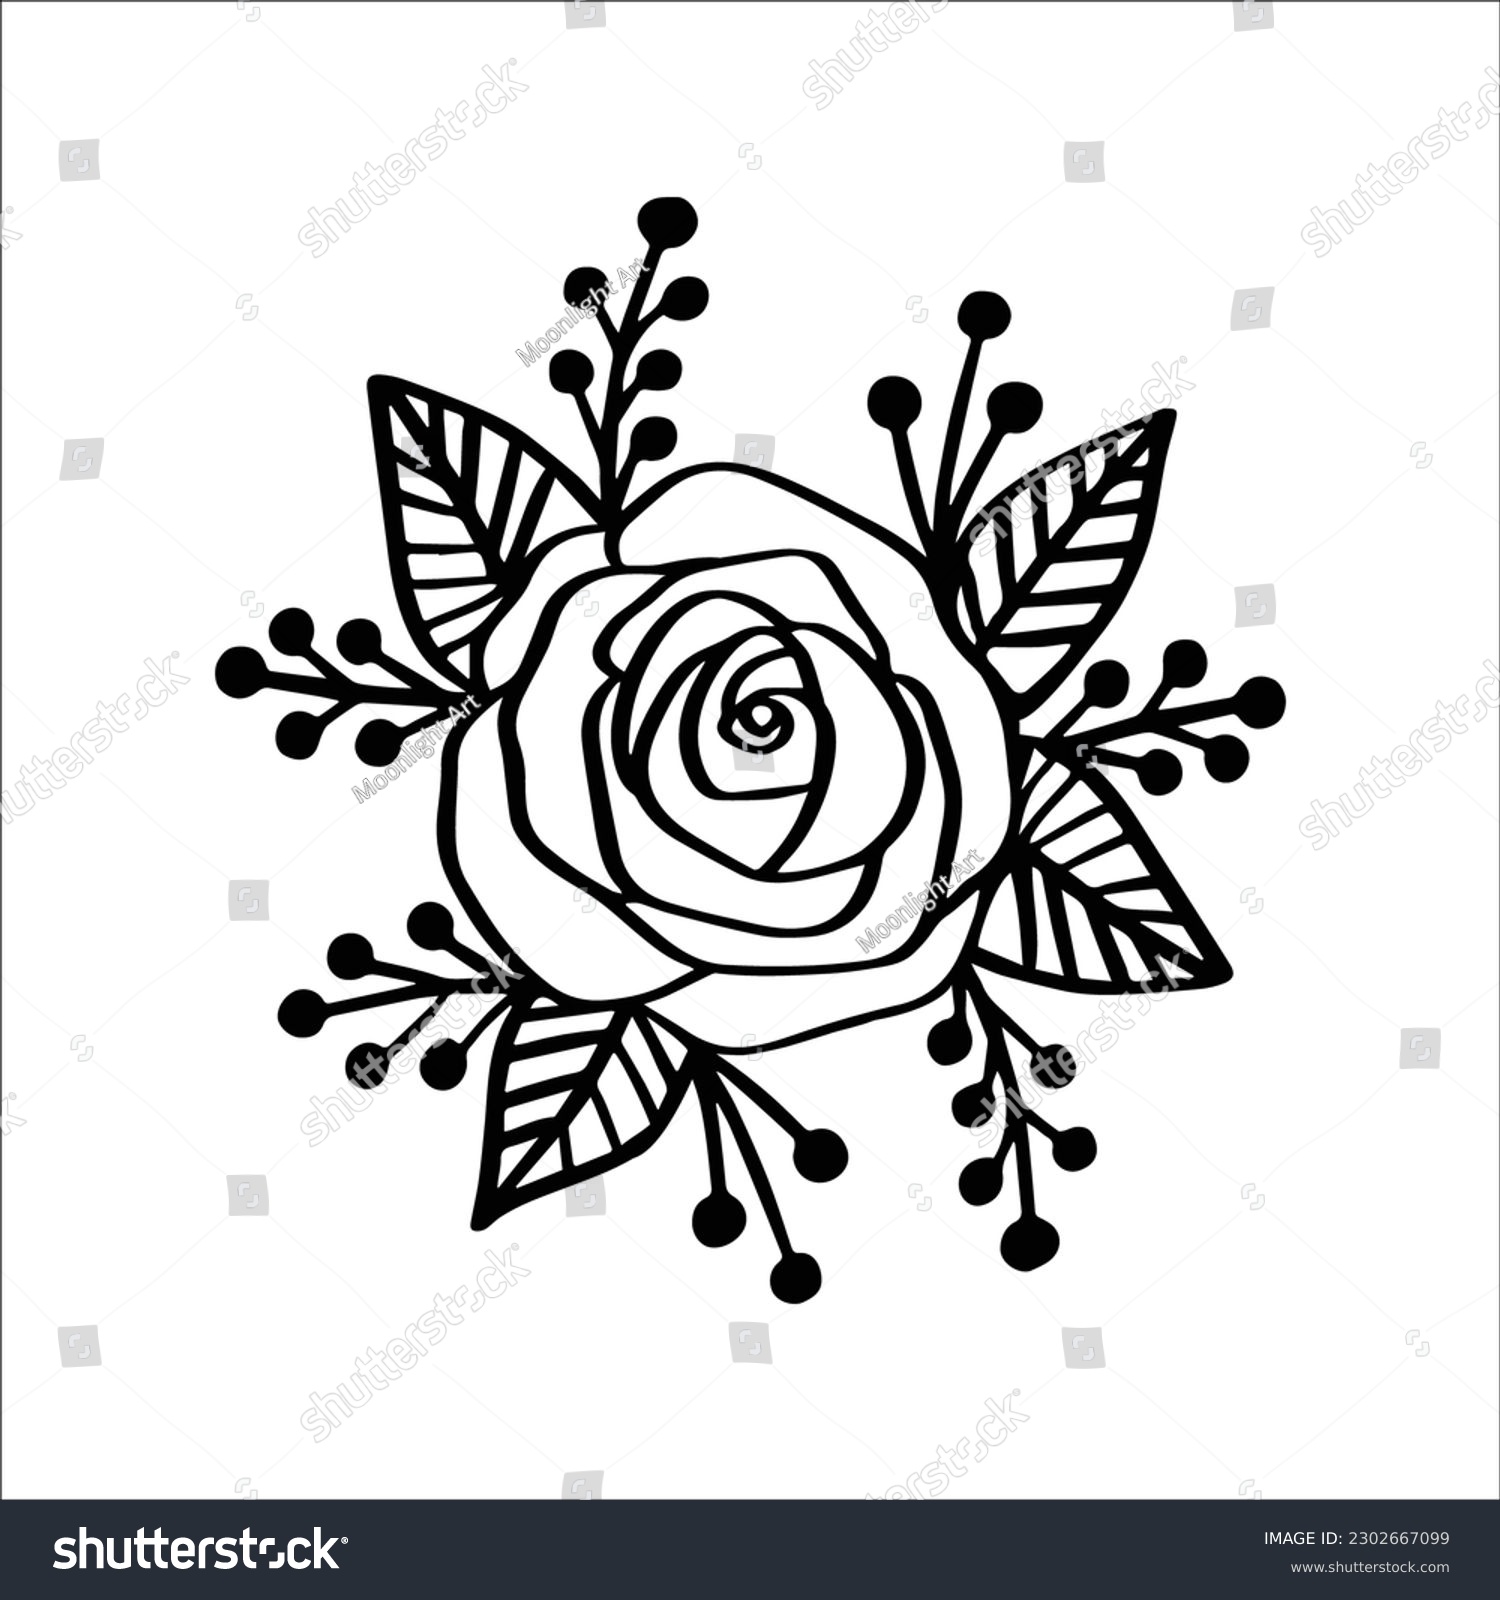 SVG of Rose Flower Bouquet SVG, Floral Decoration SVG, Rose svg, Flowers SVG, Flower Bouquet, Rose Floral, Cricut Cut Files, Sillhouette cut files svg